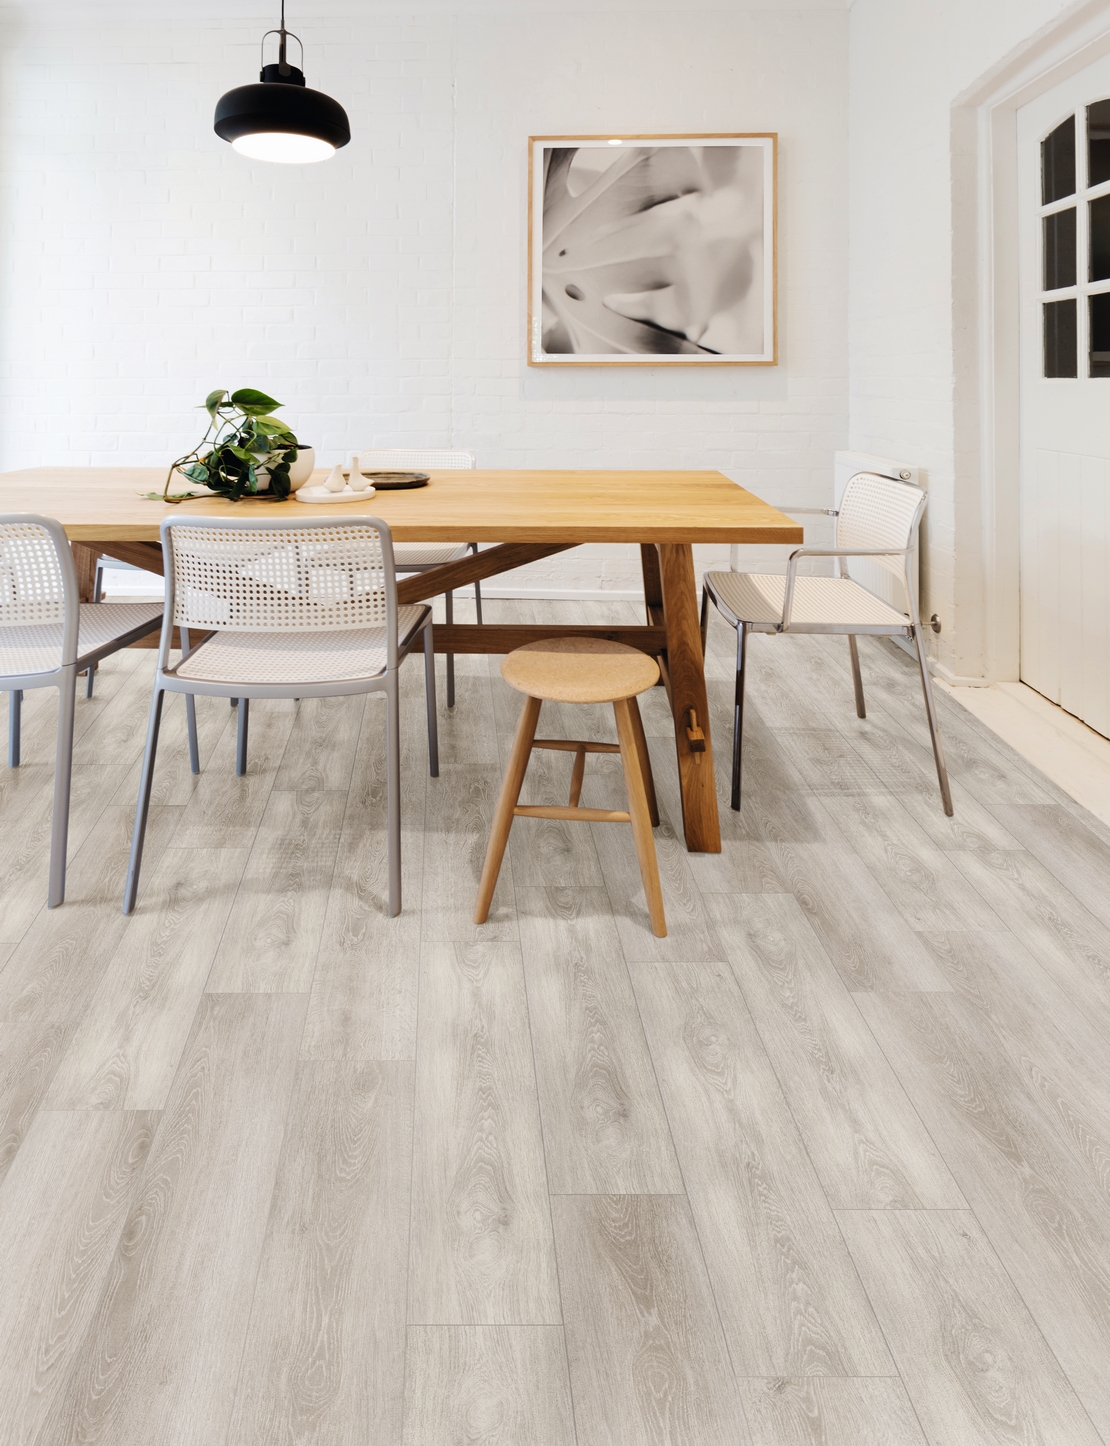 Soggiorno moderno minimal, pavimento effetto legno naturale e toni del grigio - Ambienti Iperceramica